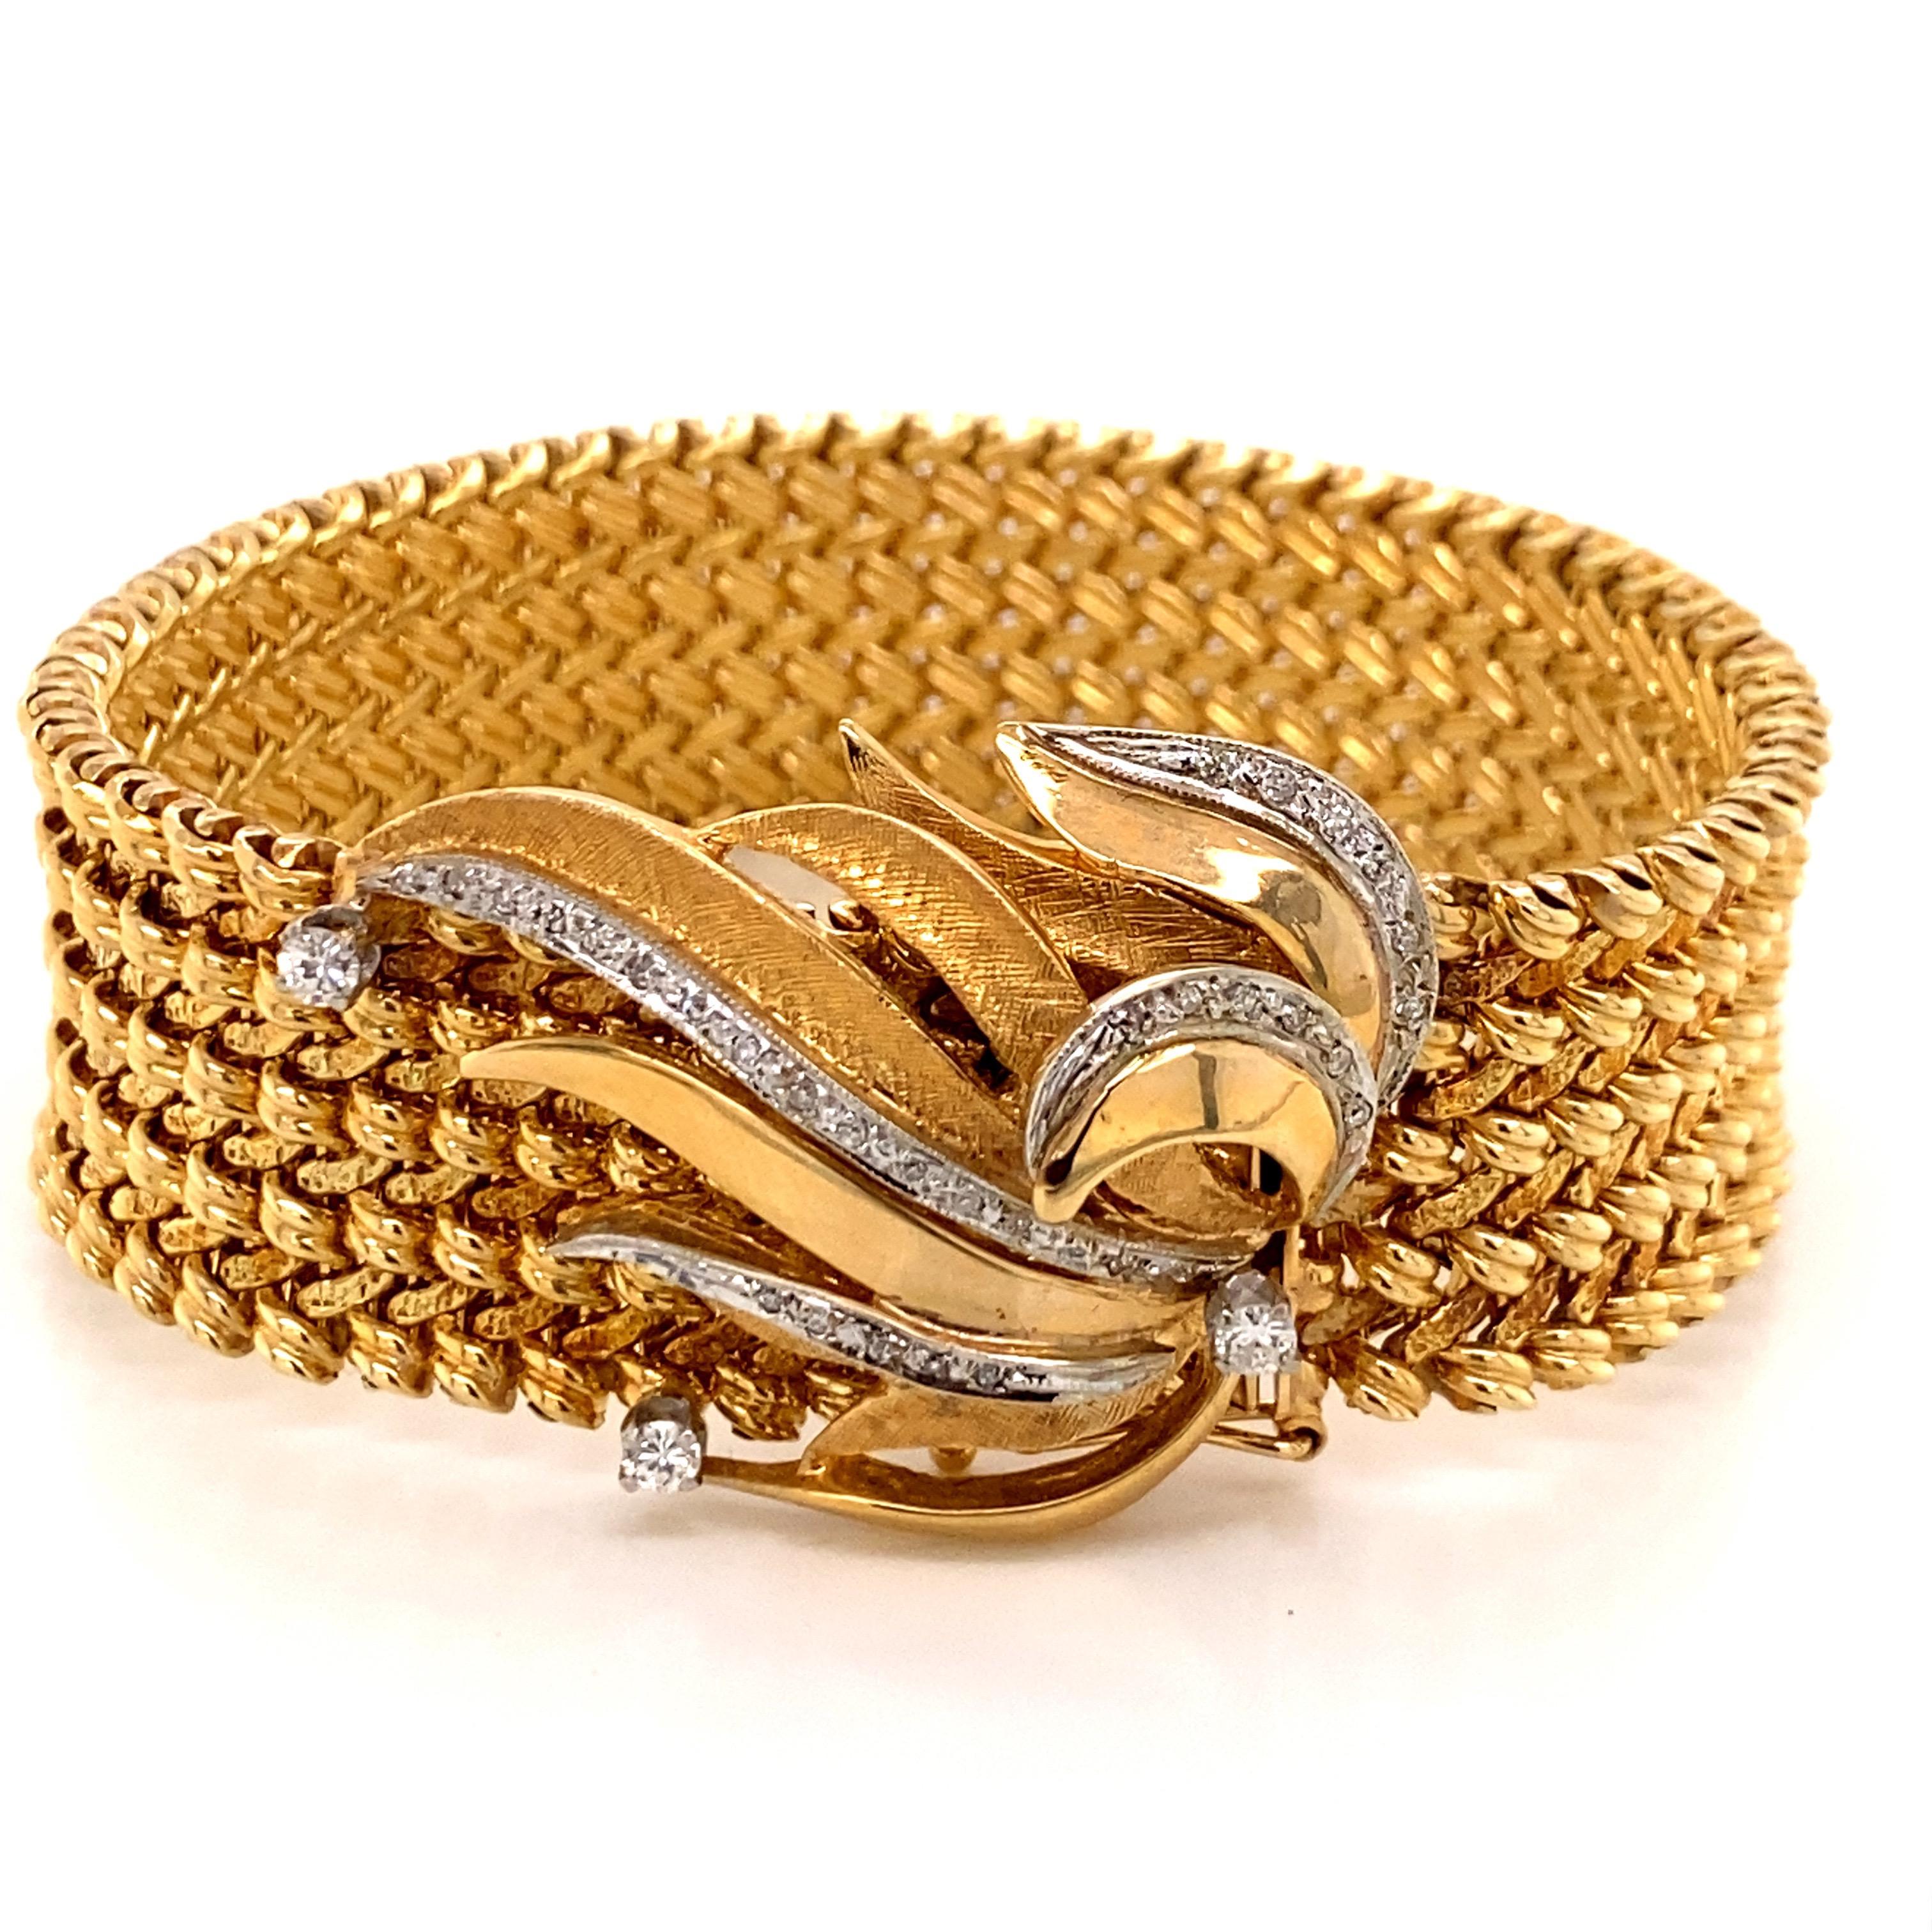 Vintage 1960's 14K Gelbgold Wide Woven Link Bracelet mit Diamond Leaf Clasp - Das Armband misst 7 Zoll lang und 3/4 Zoll breit. Die Diamantblattschließe enthält 33 einzeln geschliffene Diamanten und 3 Vollschliffdiamanten mit einem Gesamtgewicht von